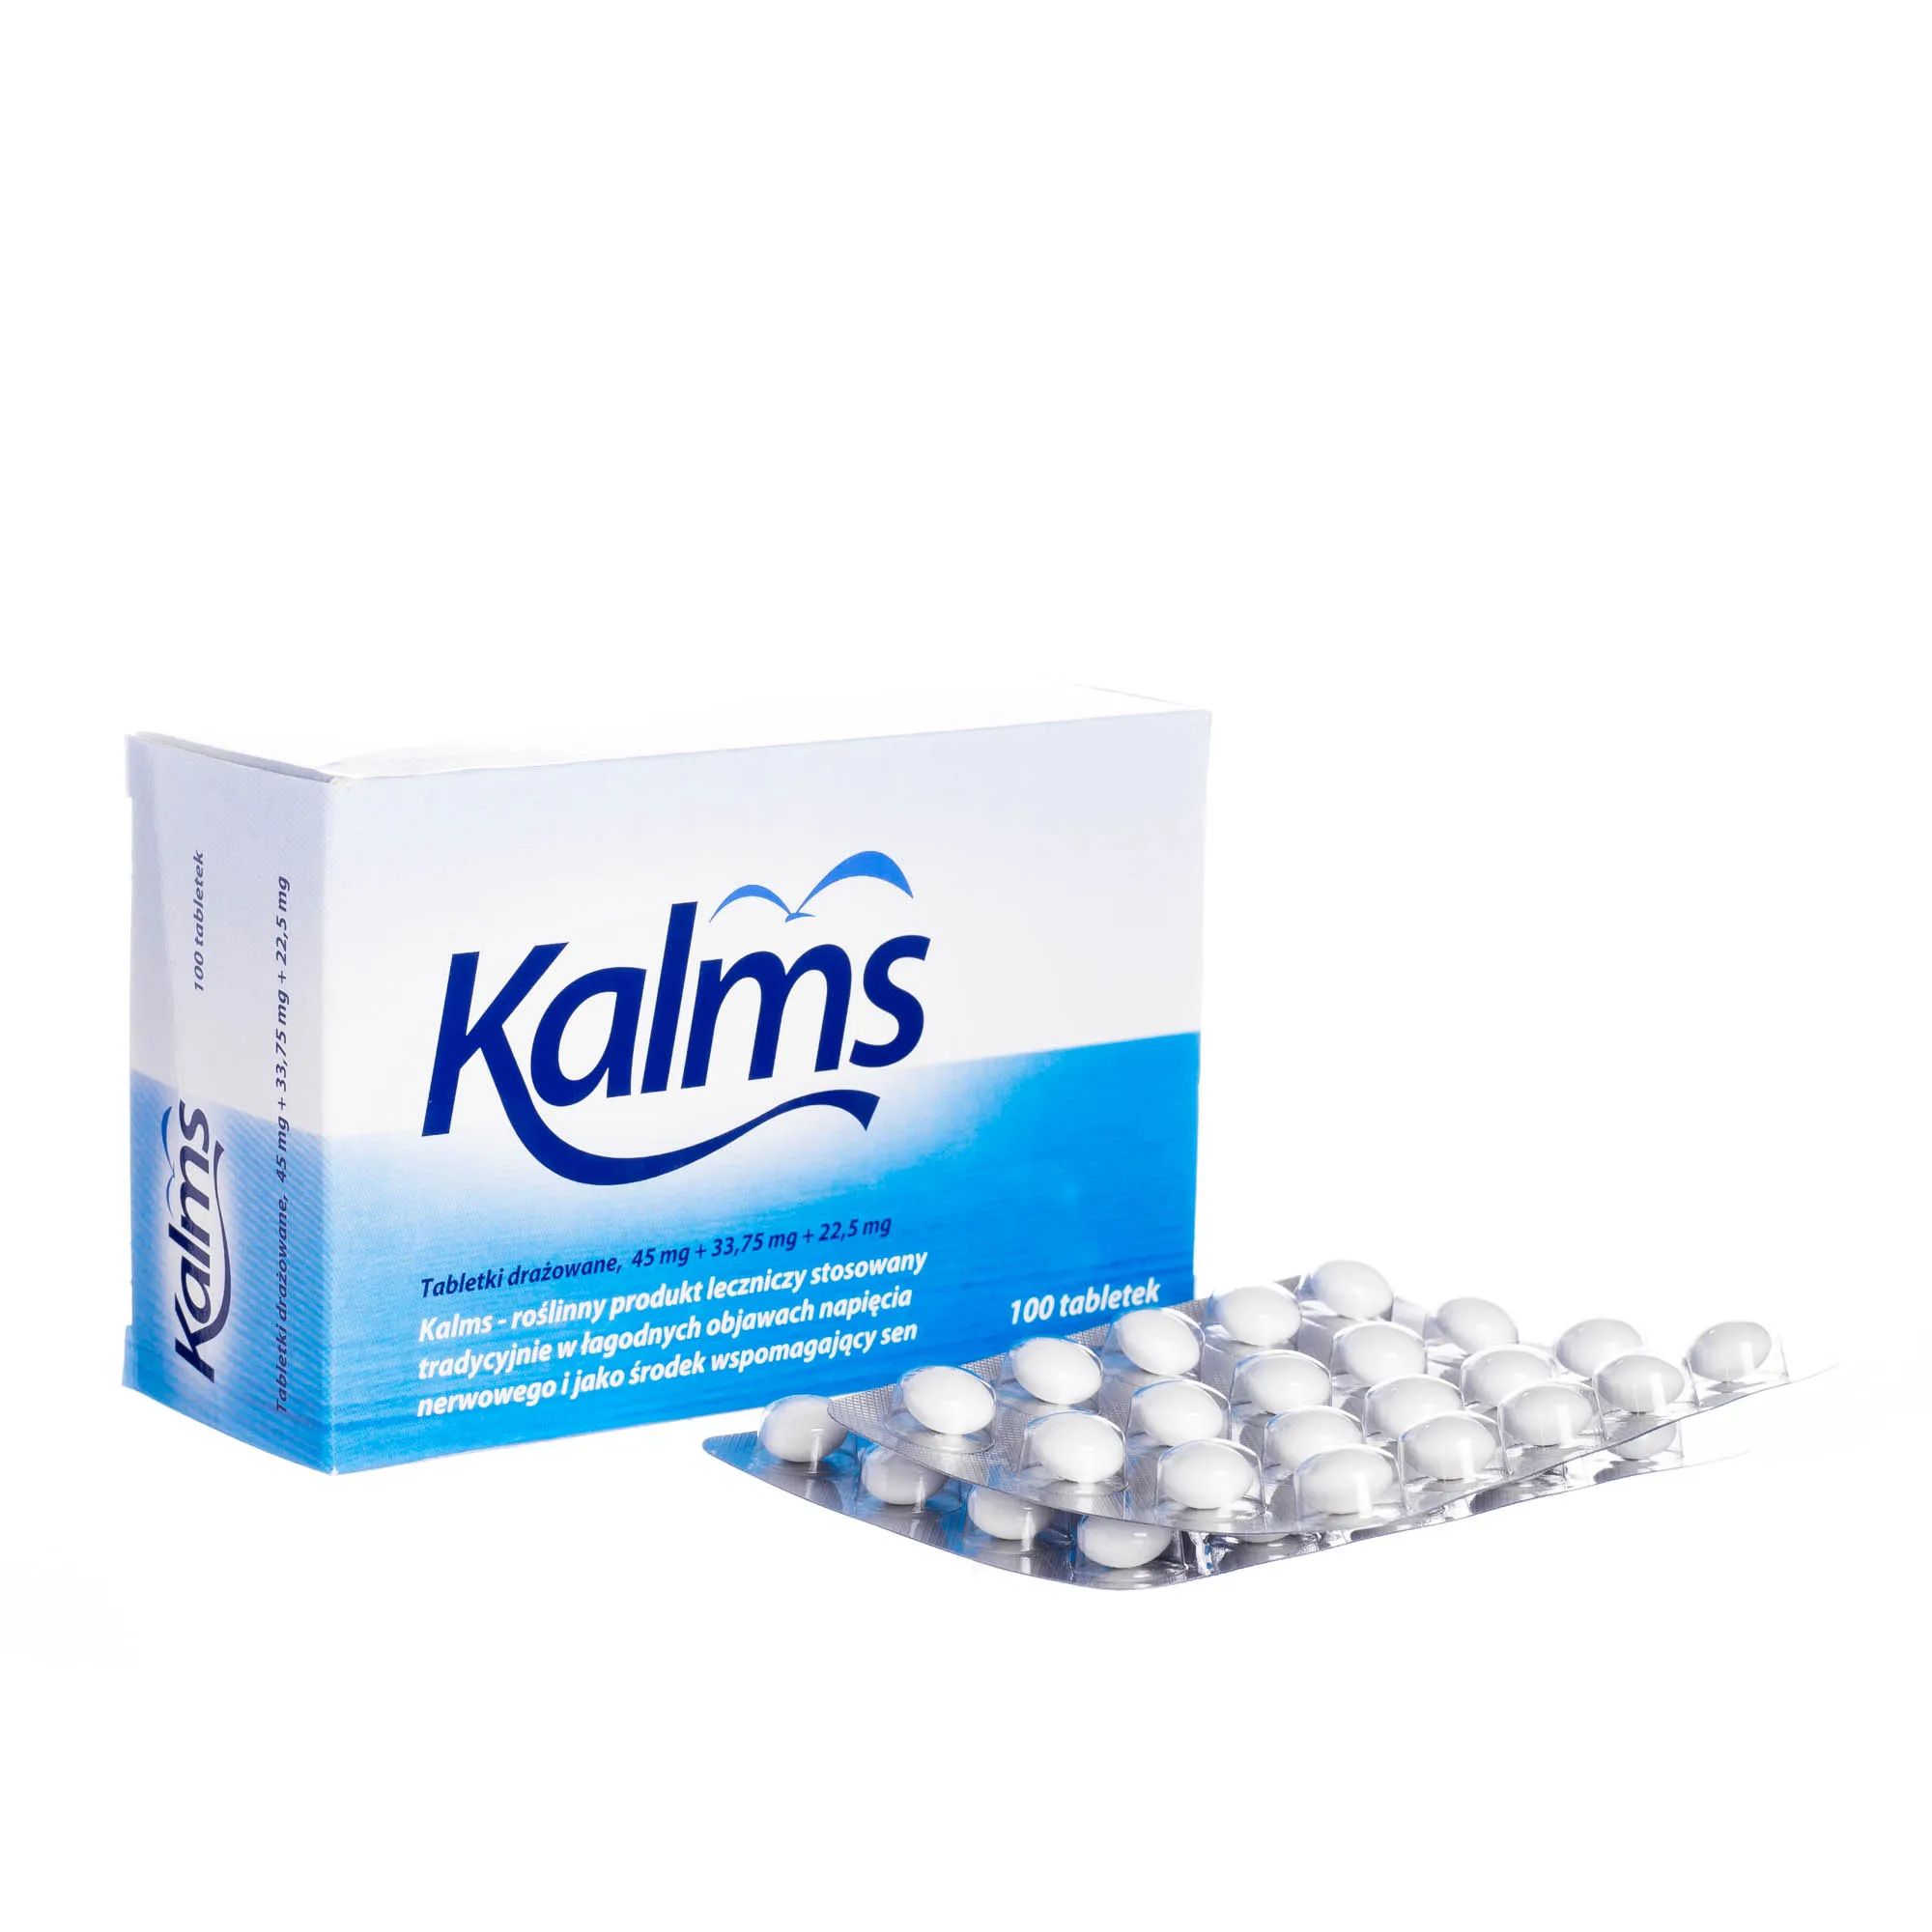 Kalms - roślinny produkt leczniczy, 100 tabletek